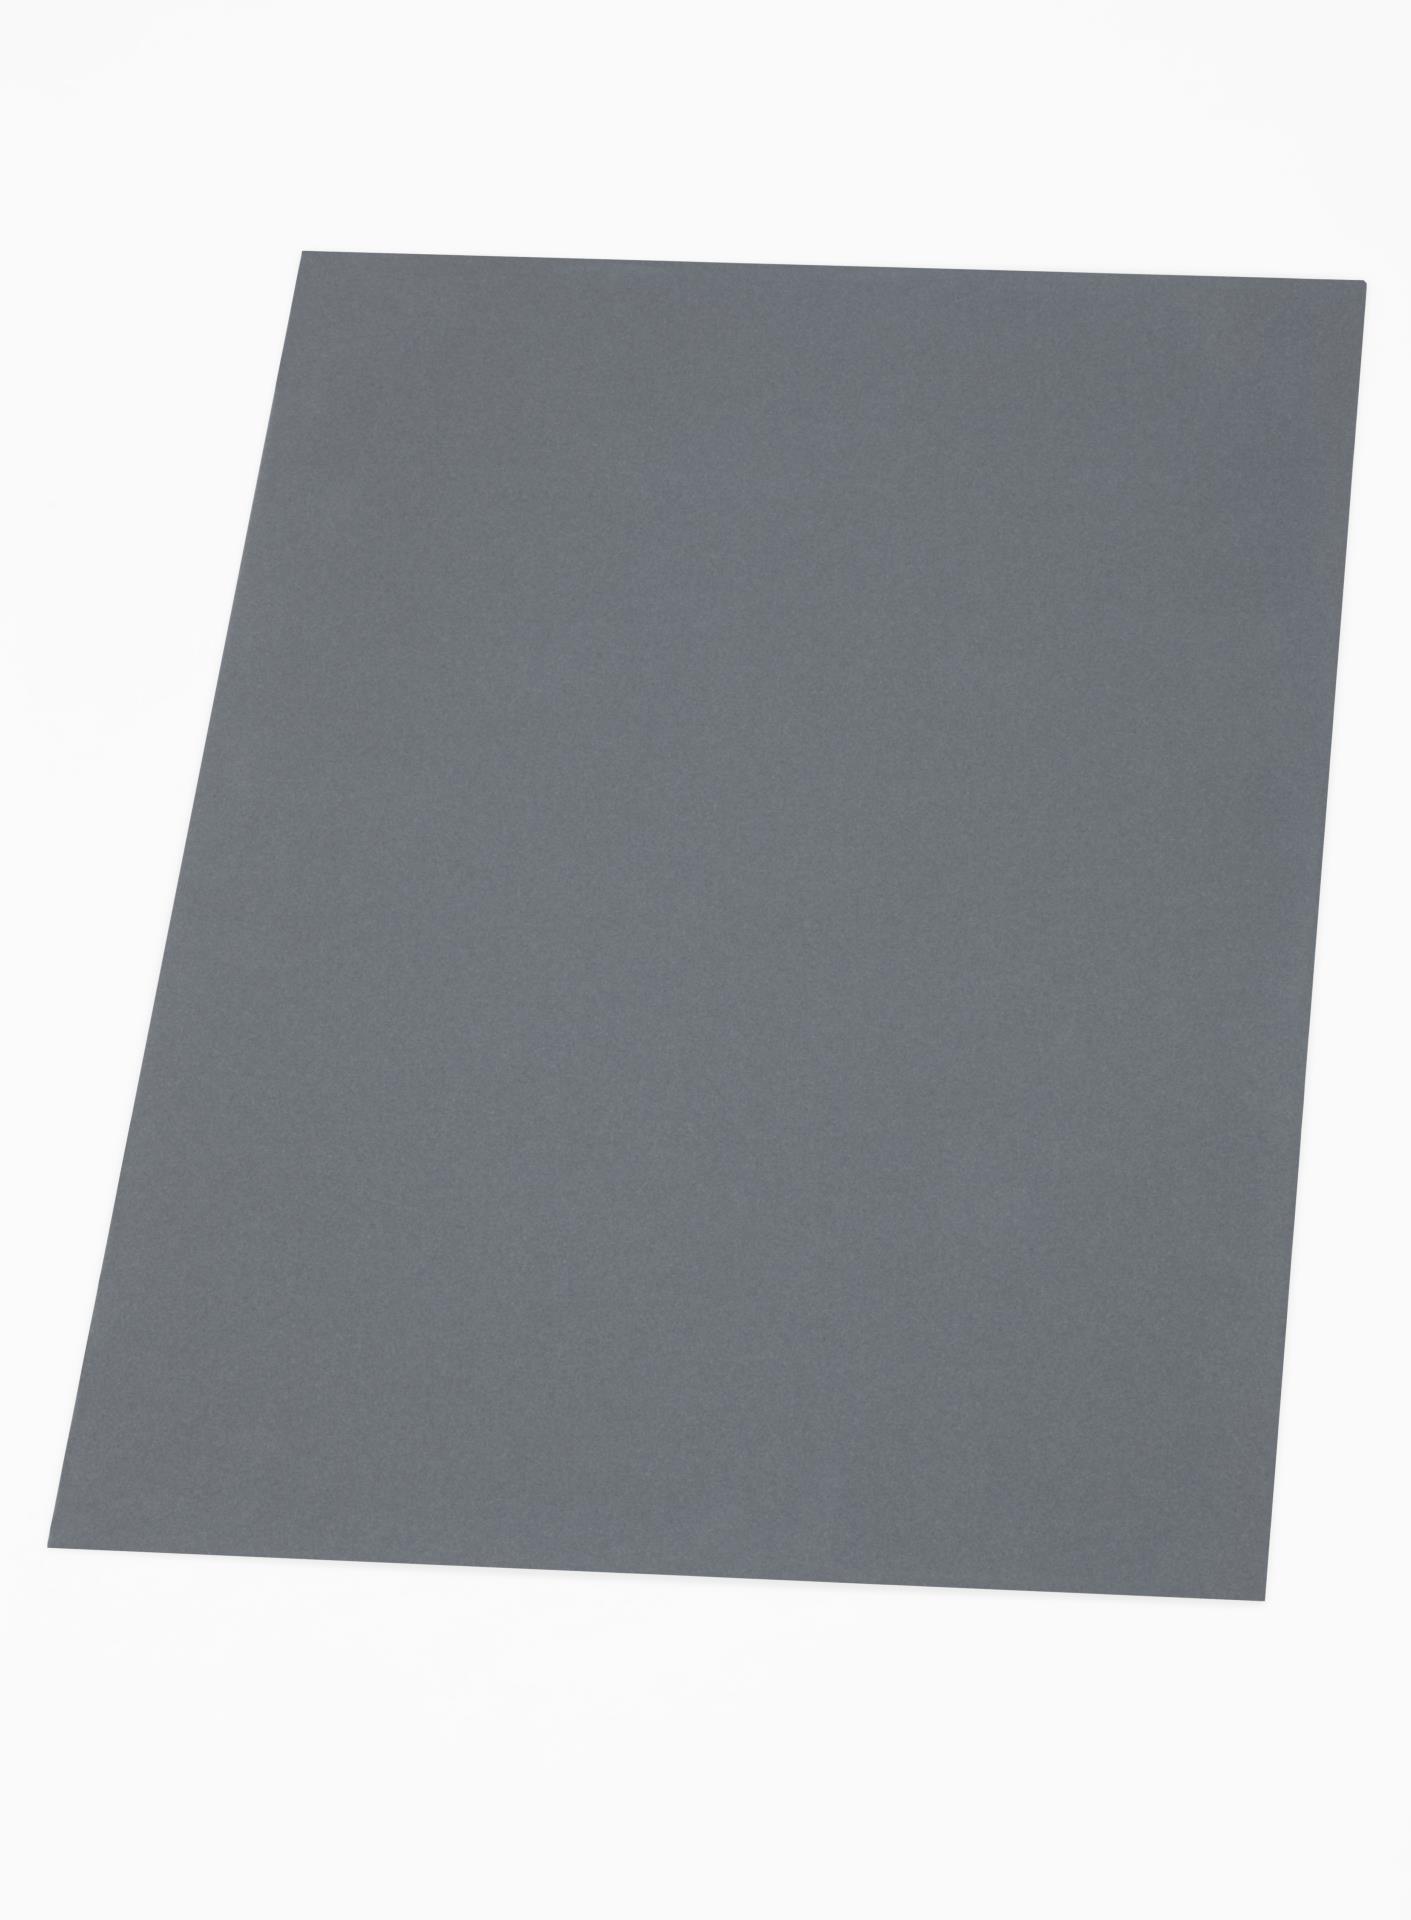 Blackcore Foam Board Pack - 32 x 40 x 3/16, Black, Pkg of 10